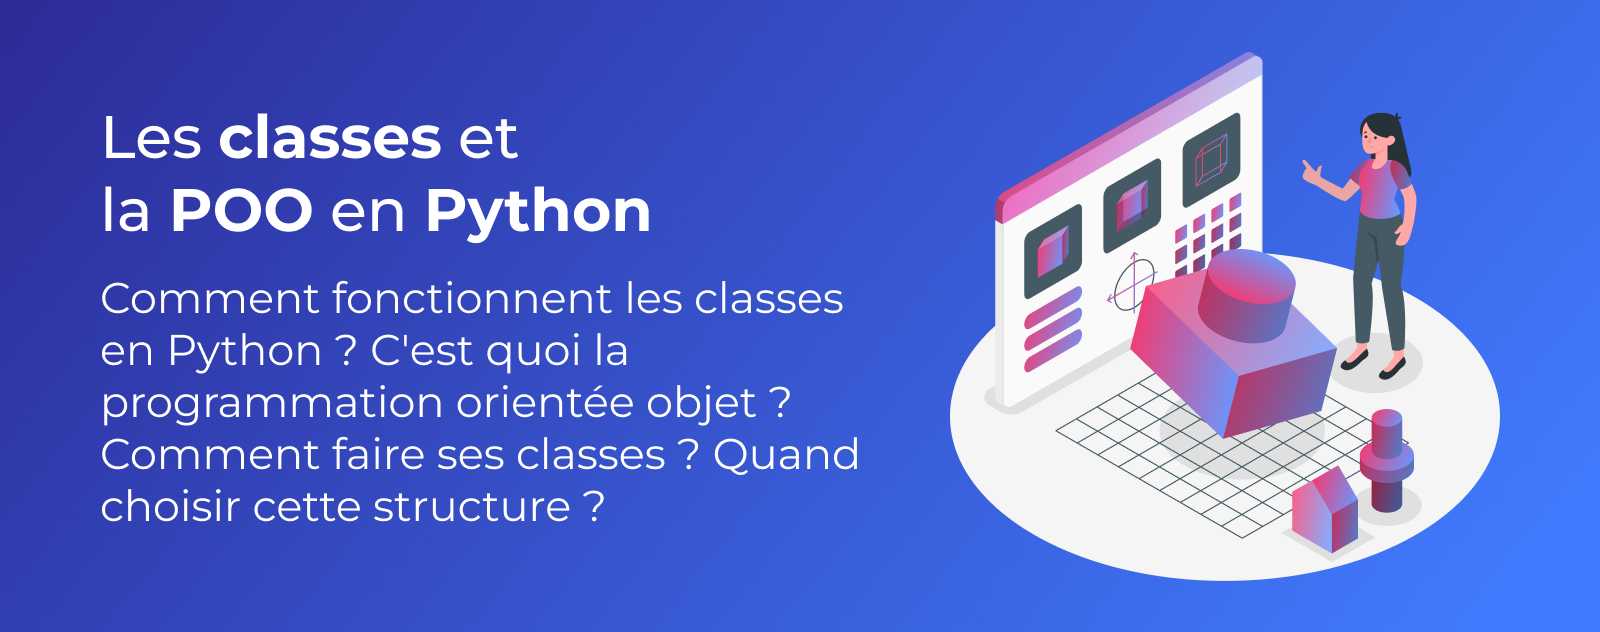 Les classes en Python